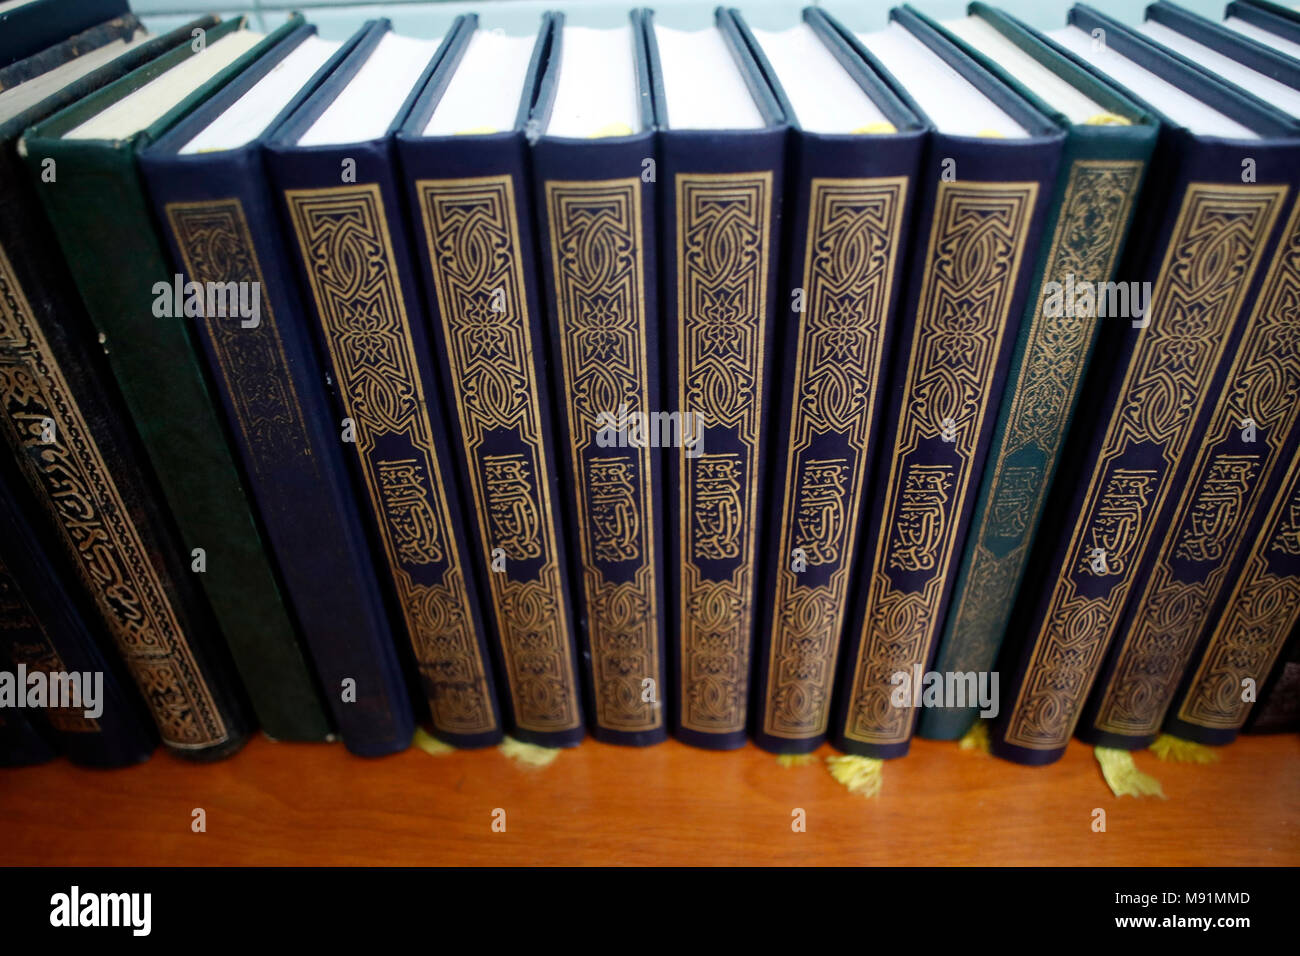 Holy book of islam immagini e fotografie stock ad alta risoluzione - Alamy